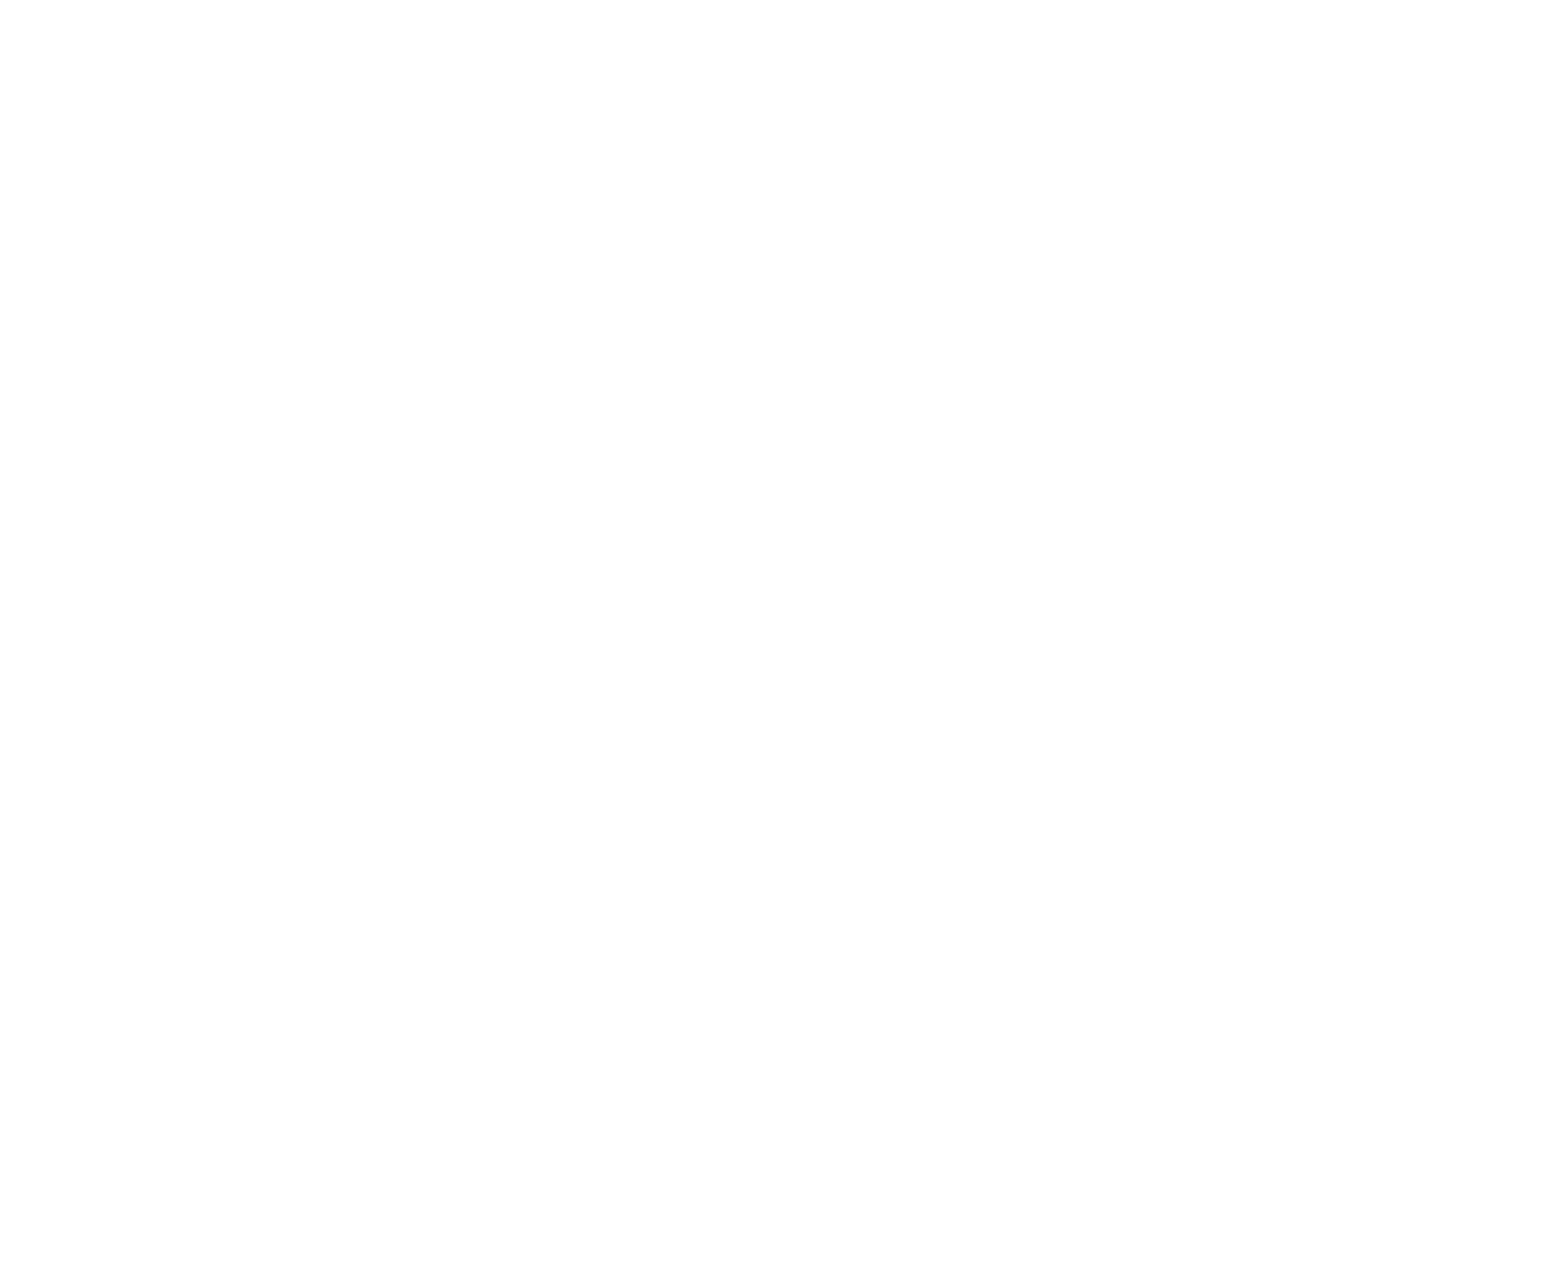 icono gluten free